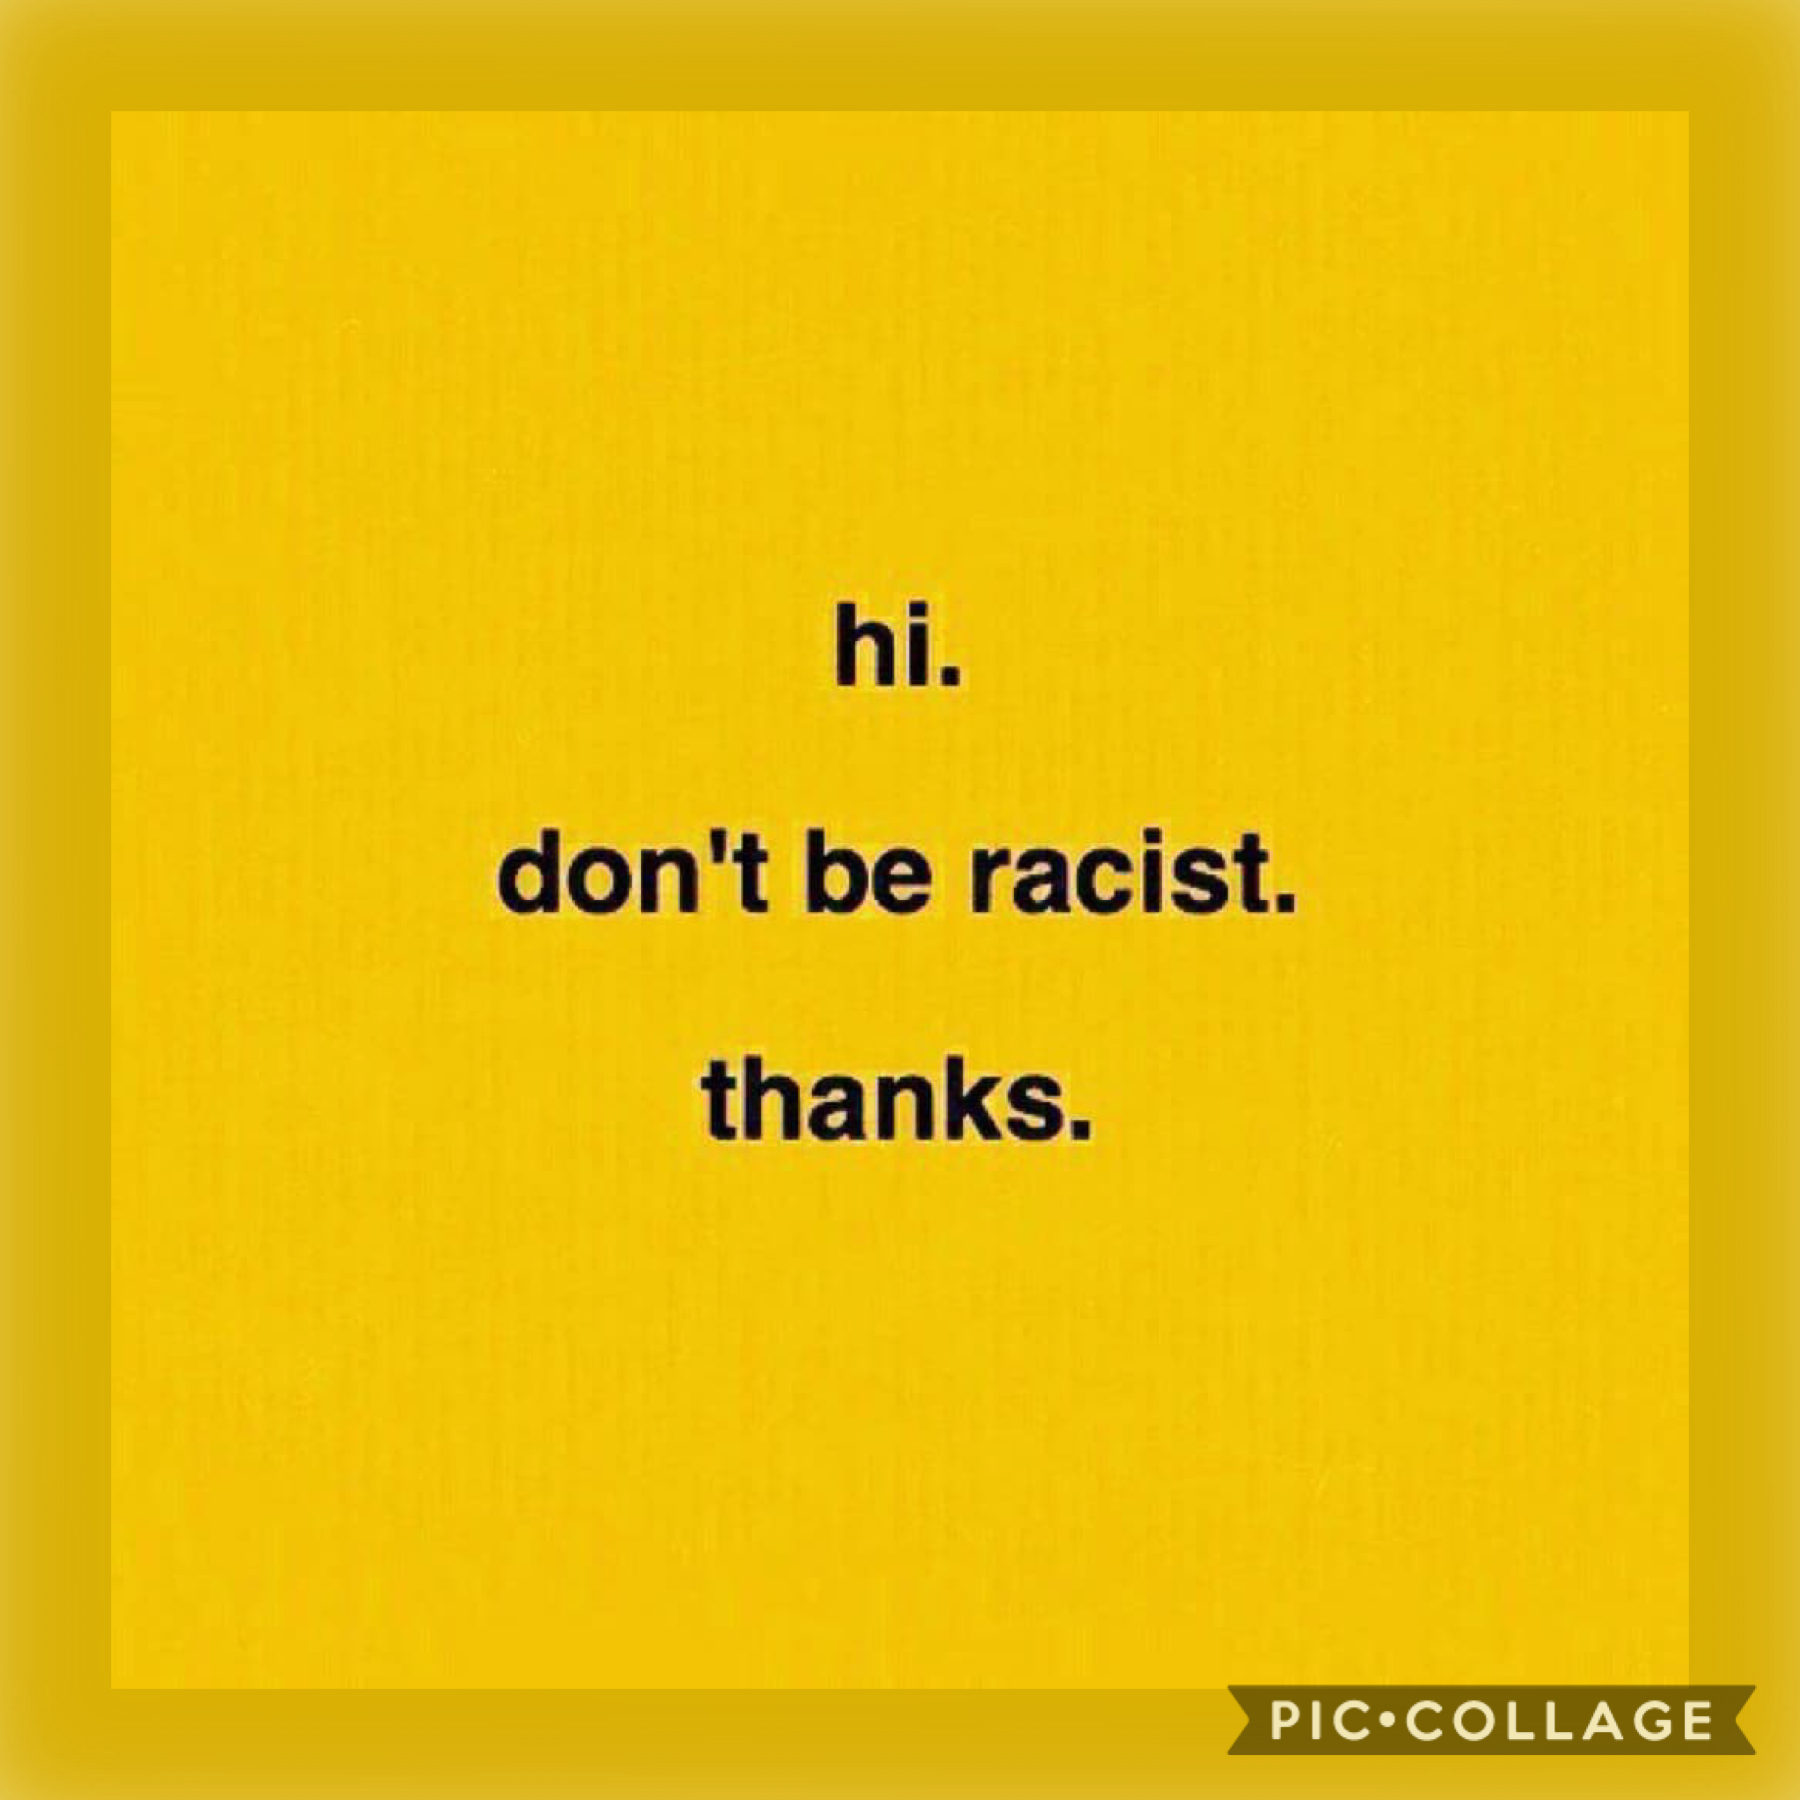 pls don’t be racist. thxs 👍🏽